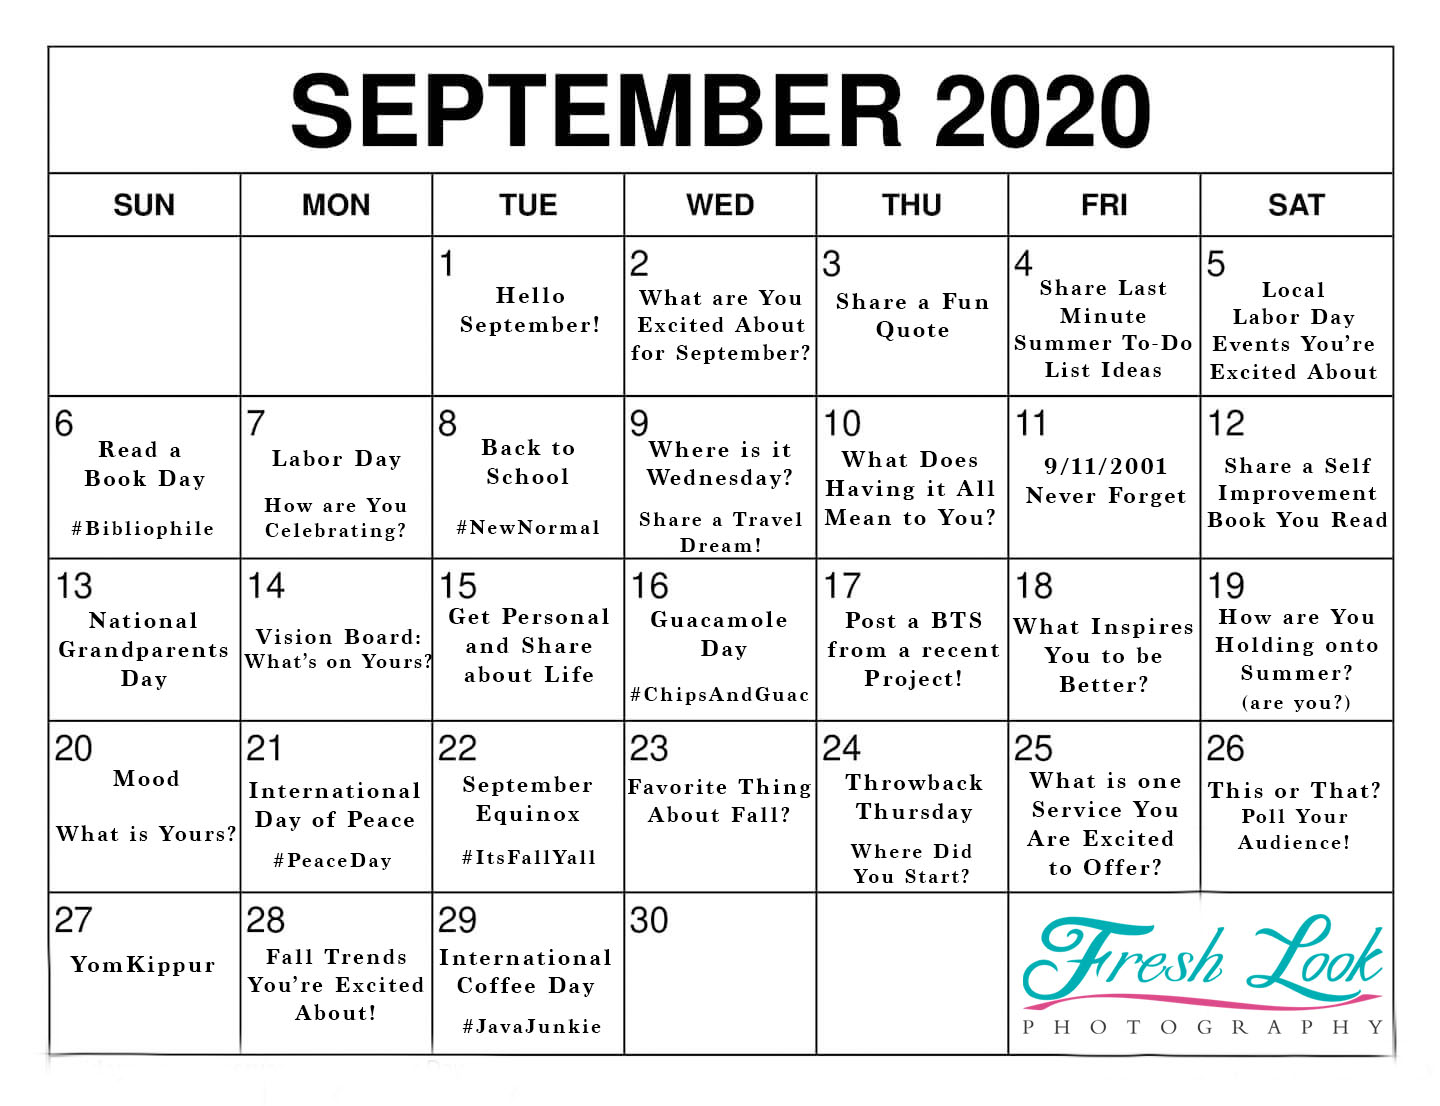 September 2020 Goals